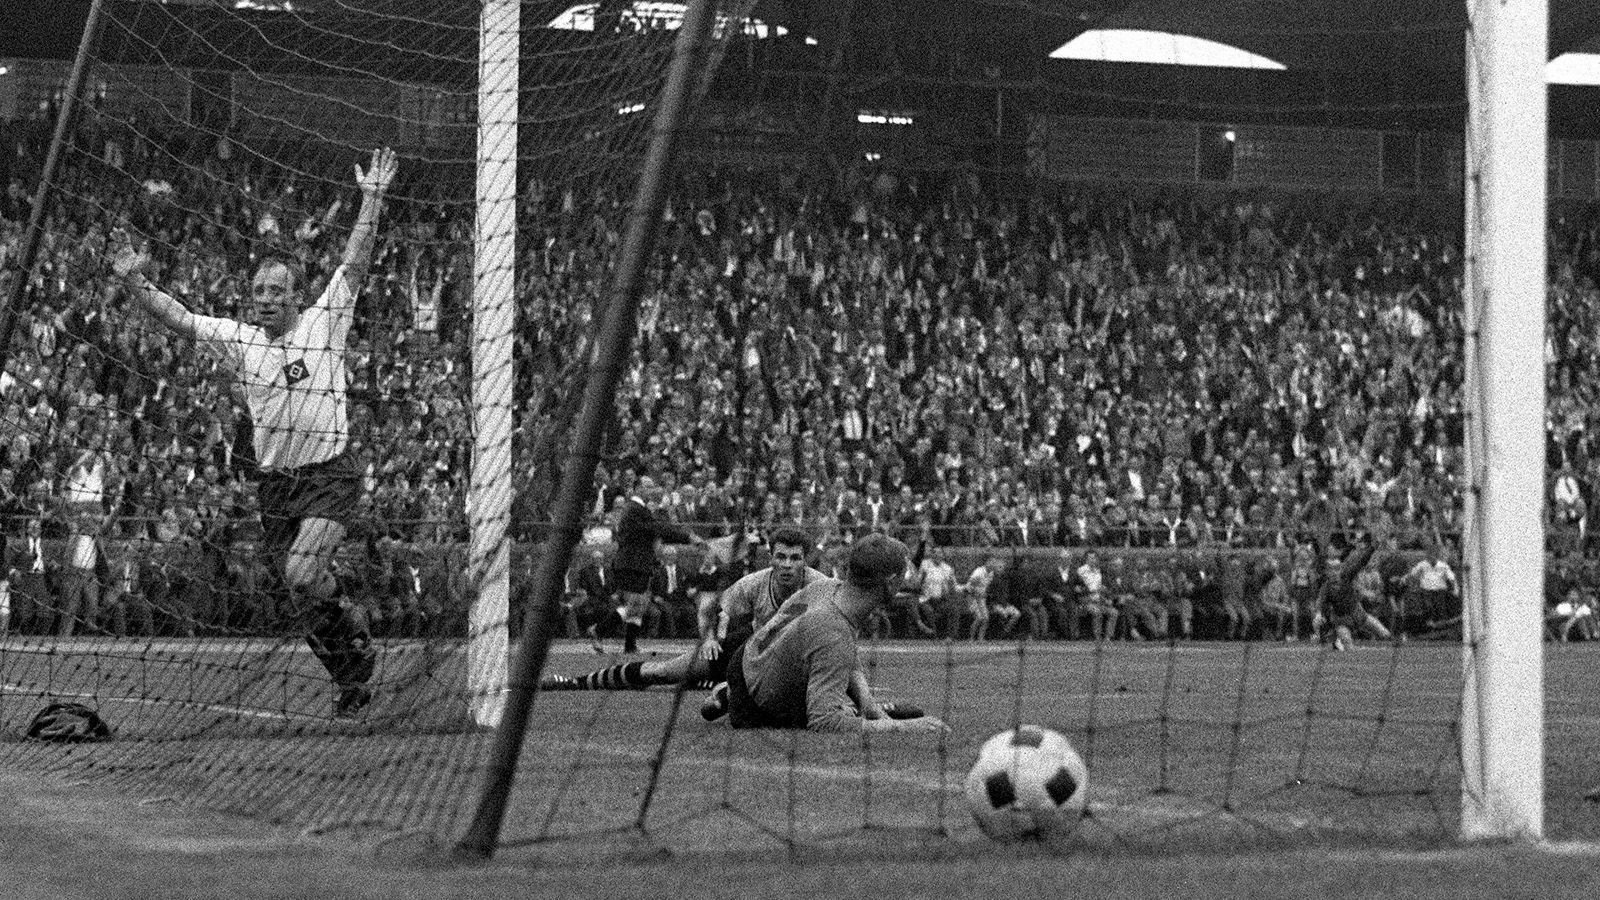 
                <strong>Bundesliga: Hamburger SV vs. Borussia Dortmund (1963)</strong><br>
                Im ersten Jahr der neu eingeführten Bundesliga gab es auch gleich den ersten Spielabbruch. Schuld daran war auch hier schlechte Sicht wegen Nebels. In der 61. Minute pfiff der Schiri die Partie beim Stand von 1:2 ab. Gut für den HSV. Denn im Wiederholungsspiel wurde Uwe Seeler mit seinem Doppelpack zum Matchwinner für die Gastgeber. Der HSV gewann mit 2:1.
              